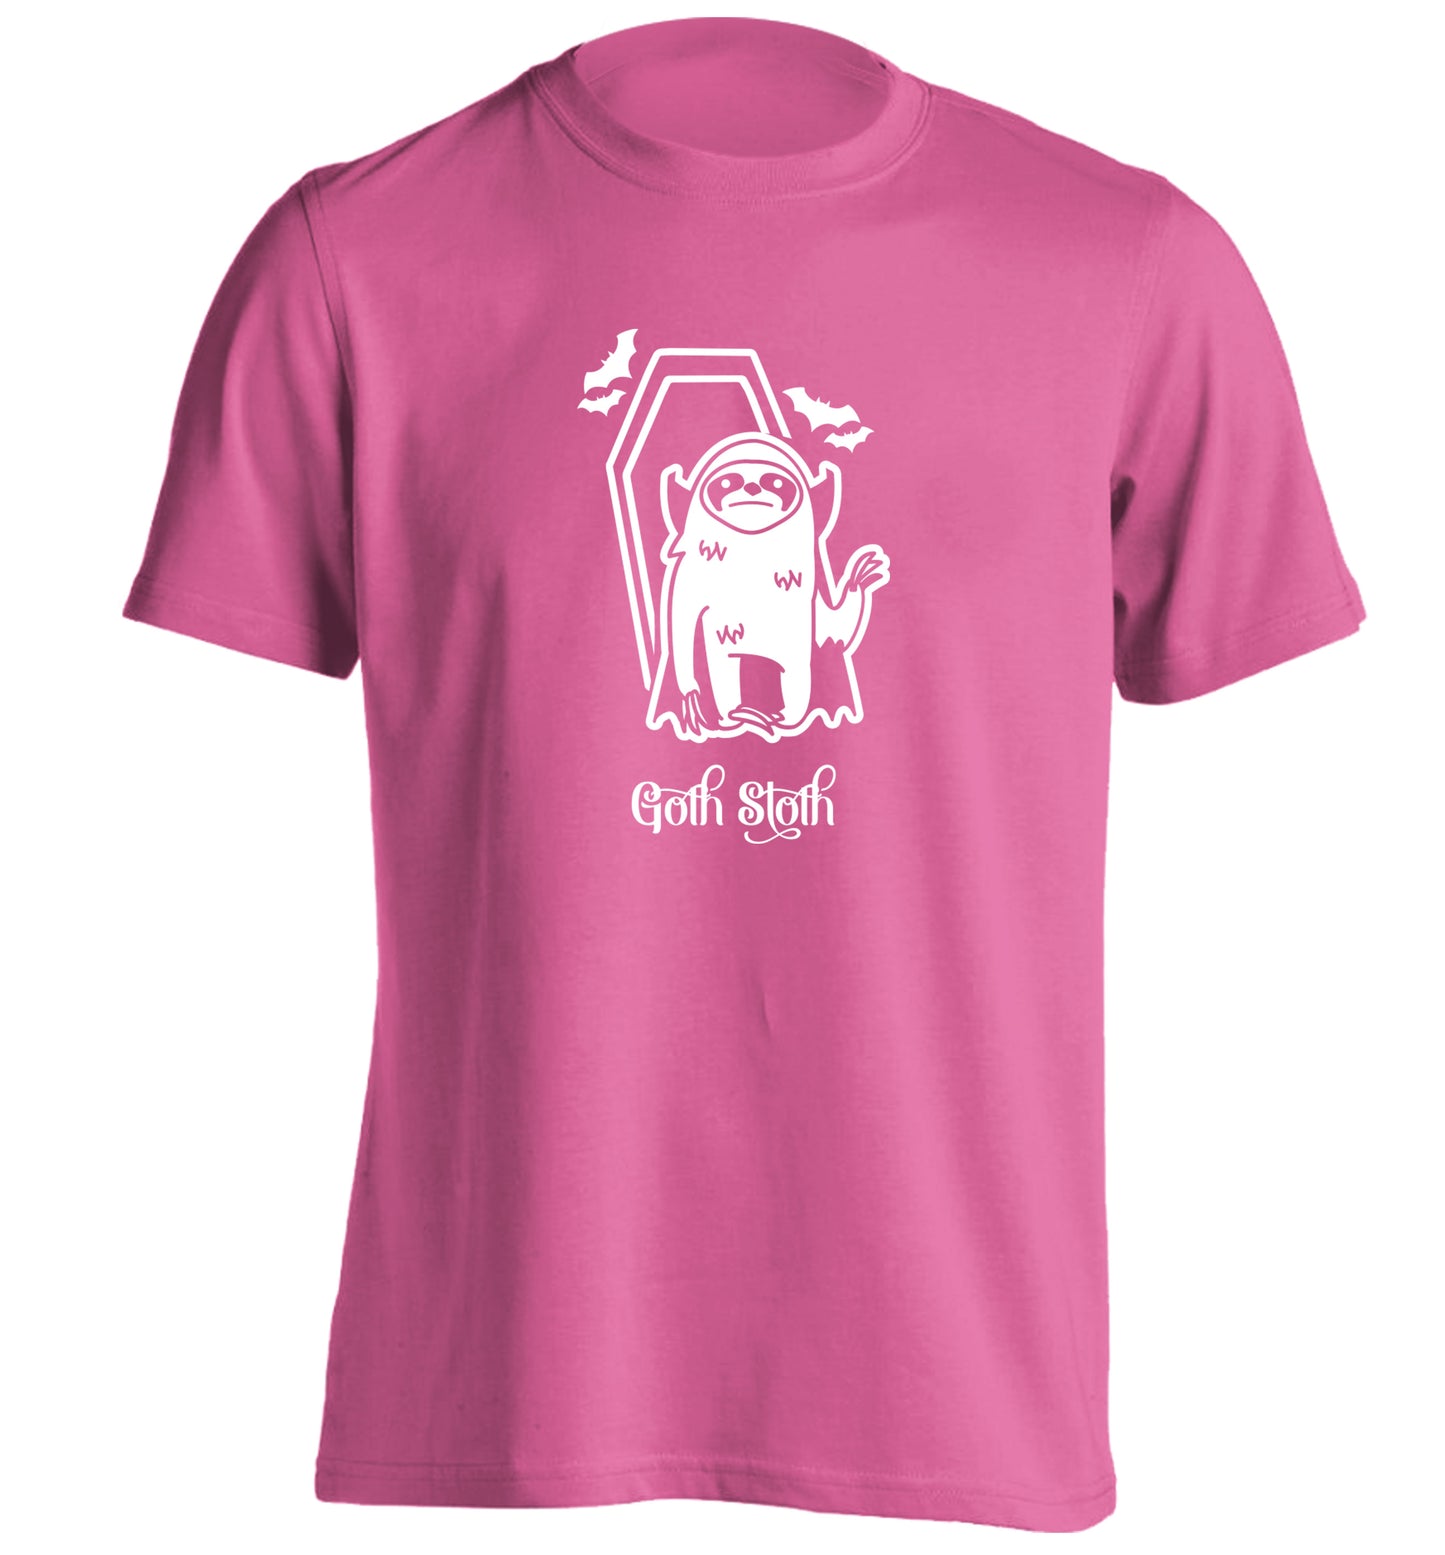 Goth Sloth adults unisex pink Tshirt 2XL